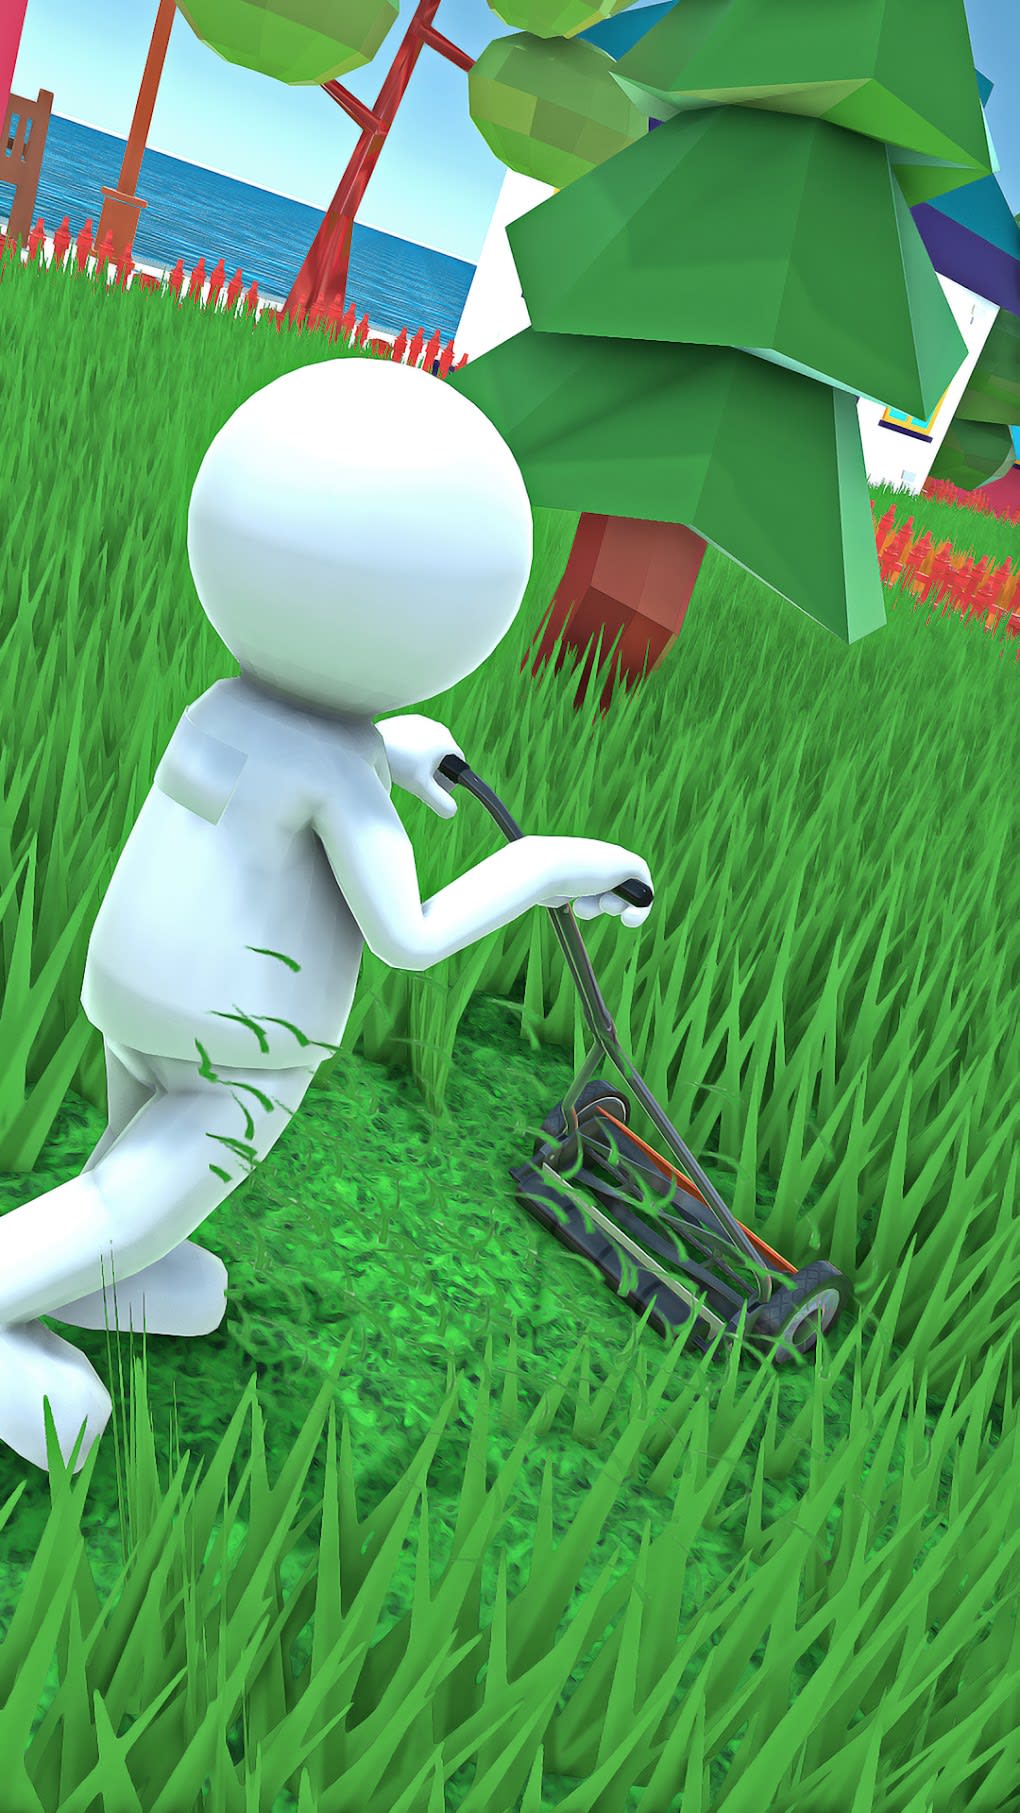 Grass Cutting Games Cut Grass Screenshot 